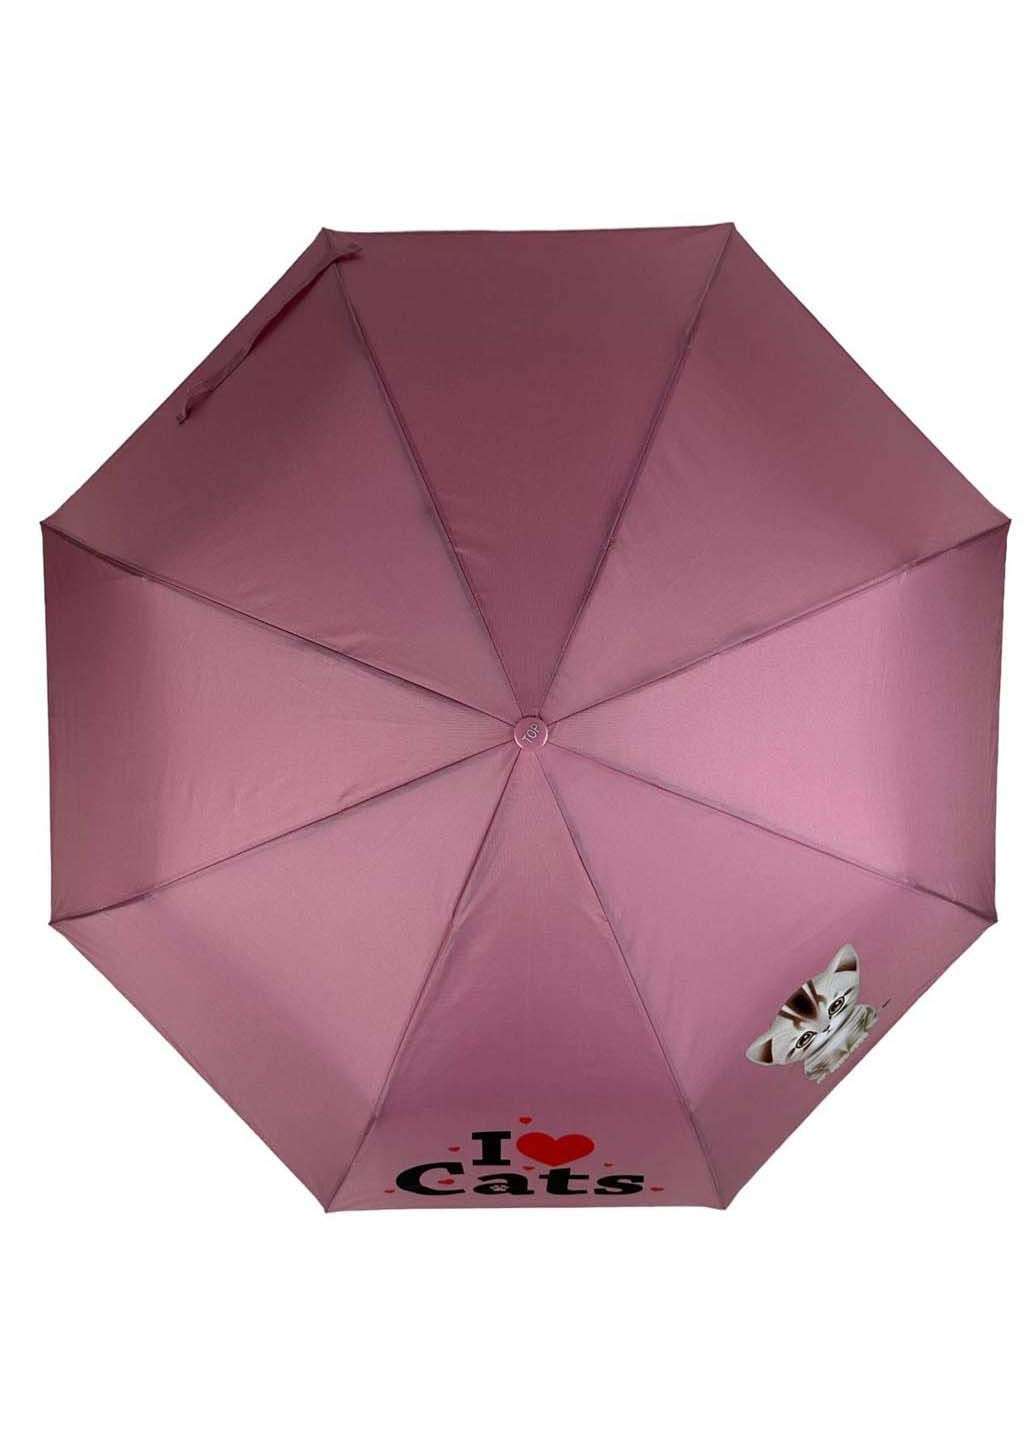 Детский складной зонт на 8 спиц "ICats" Toprain (289977372)